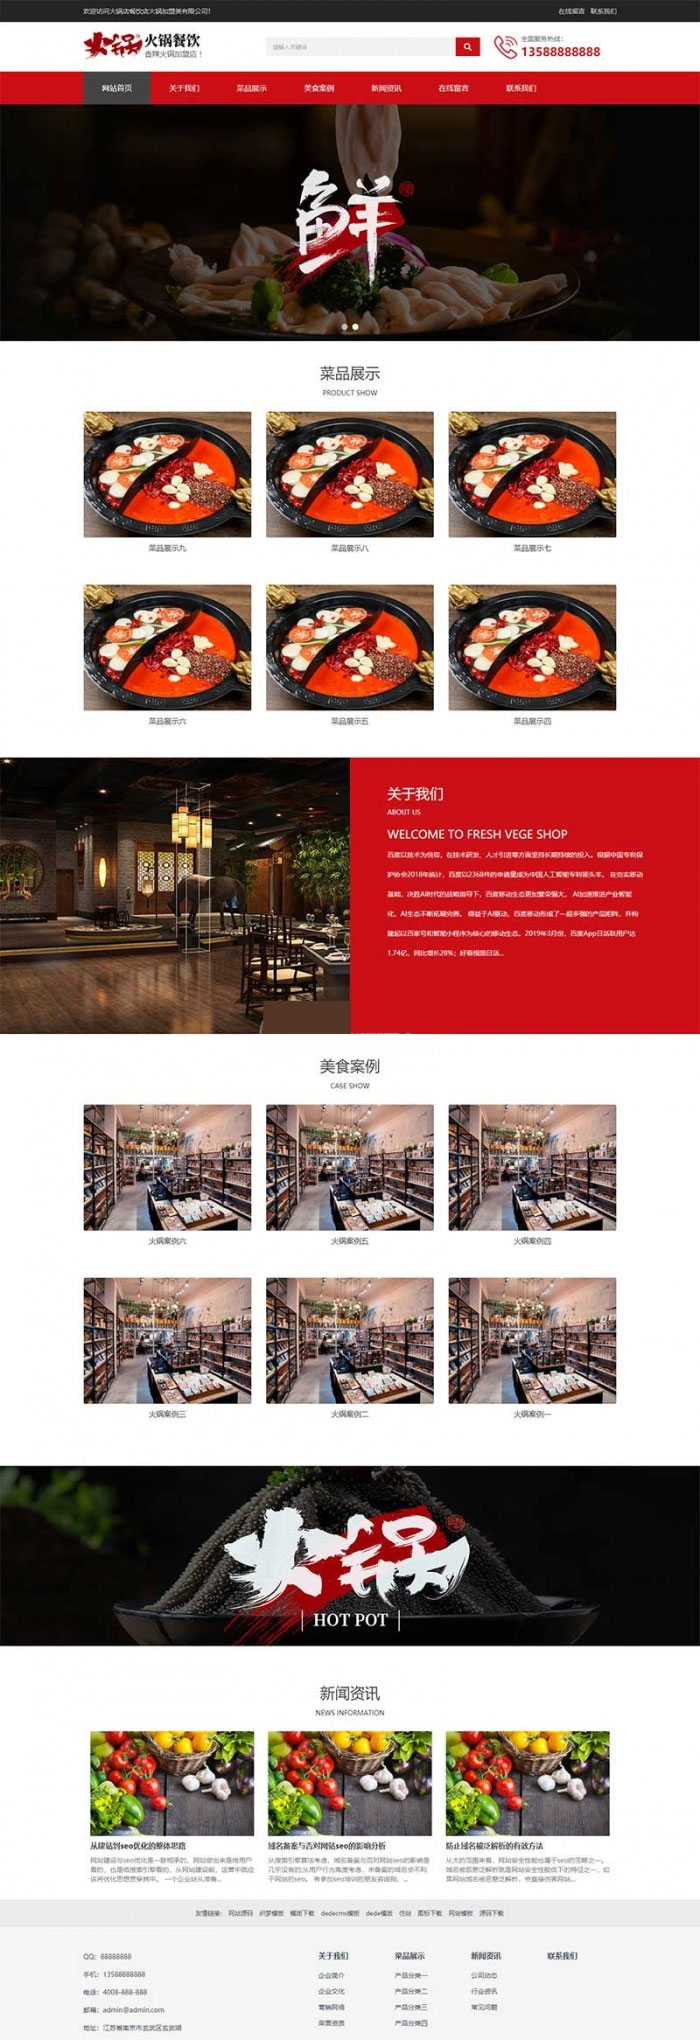 织梦dedecms响应式火锅餐饮加盟店企业网站模板(自适应手机移动端)